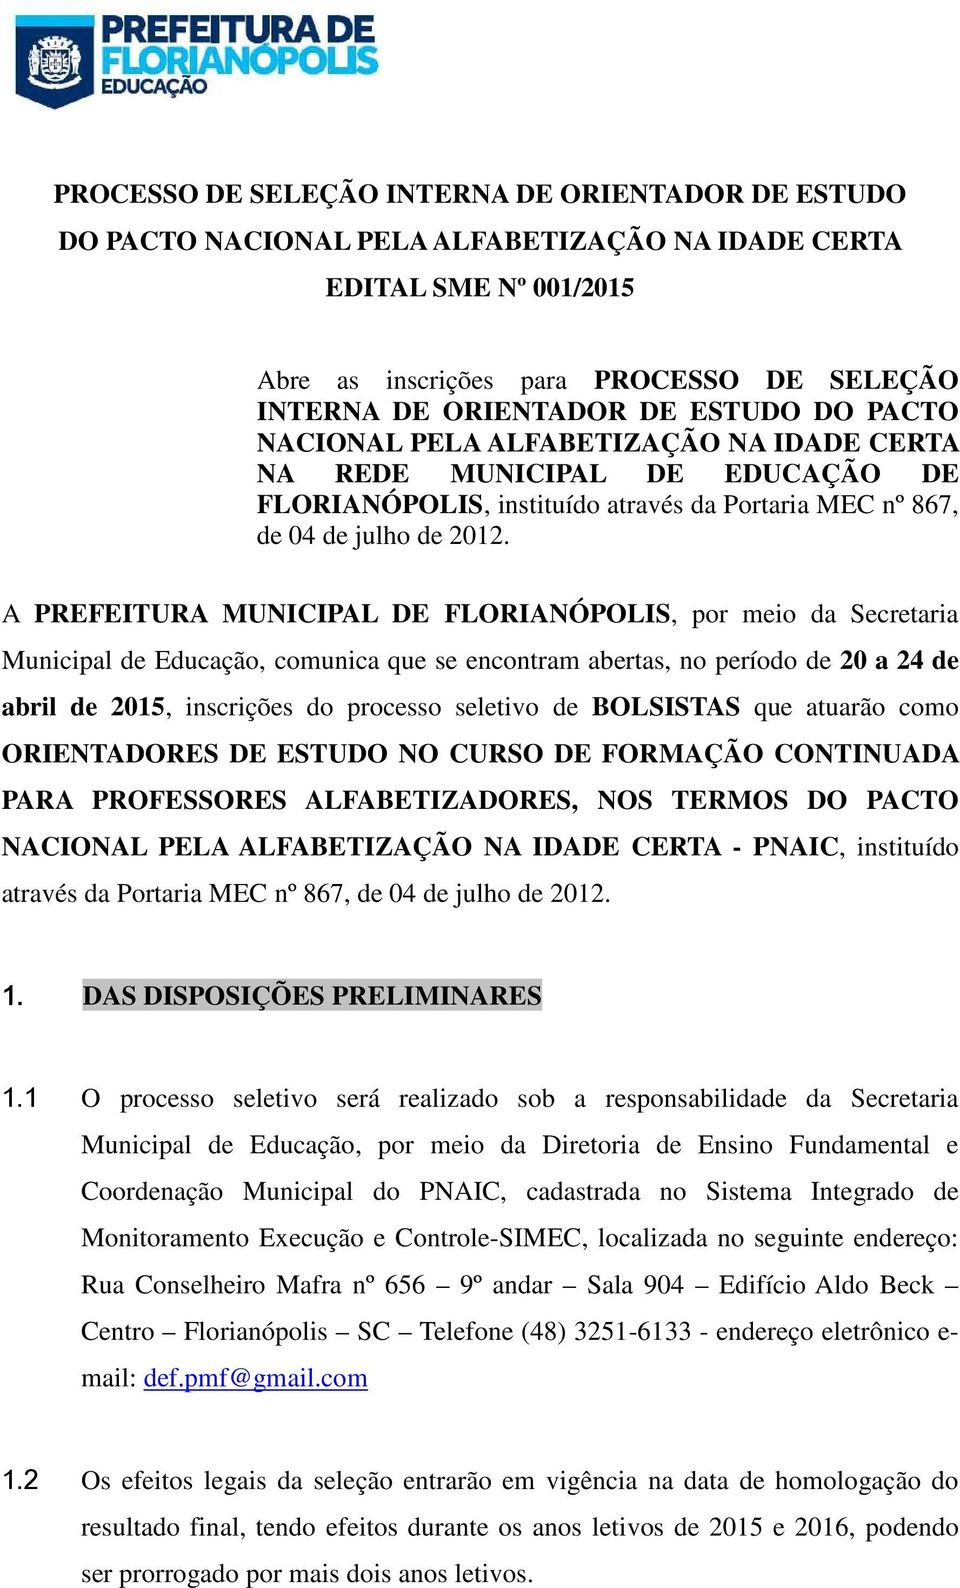 A PREFEITURA MUNICIPAL DE FLORIANÓPOLIS, por meio da Secretaria Municipal de Educação, comunica que se encontram abertas, no período de 20 a 24 de abril de 2015, inscrições do processo seletivo de